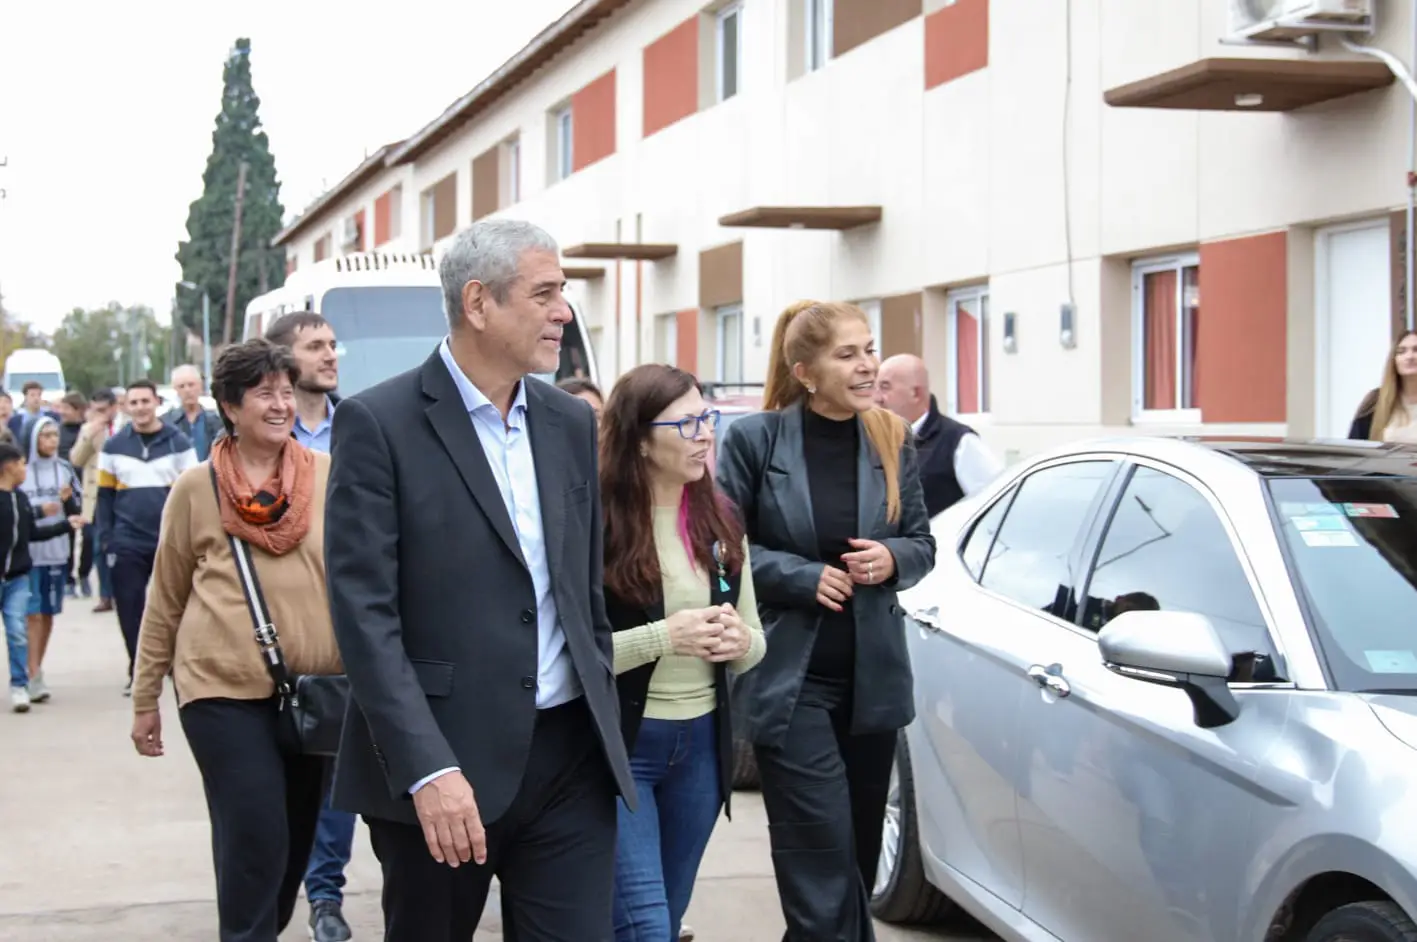 El intendente Ferraresi y la ministra Batakis recorrieron obras de viviendas e infraestructura